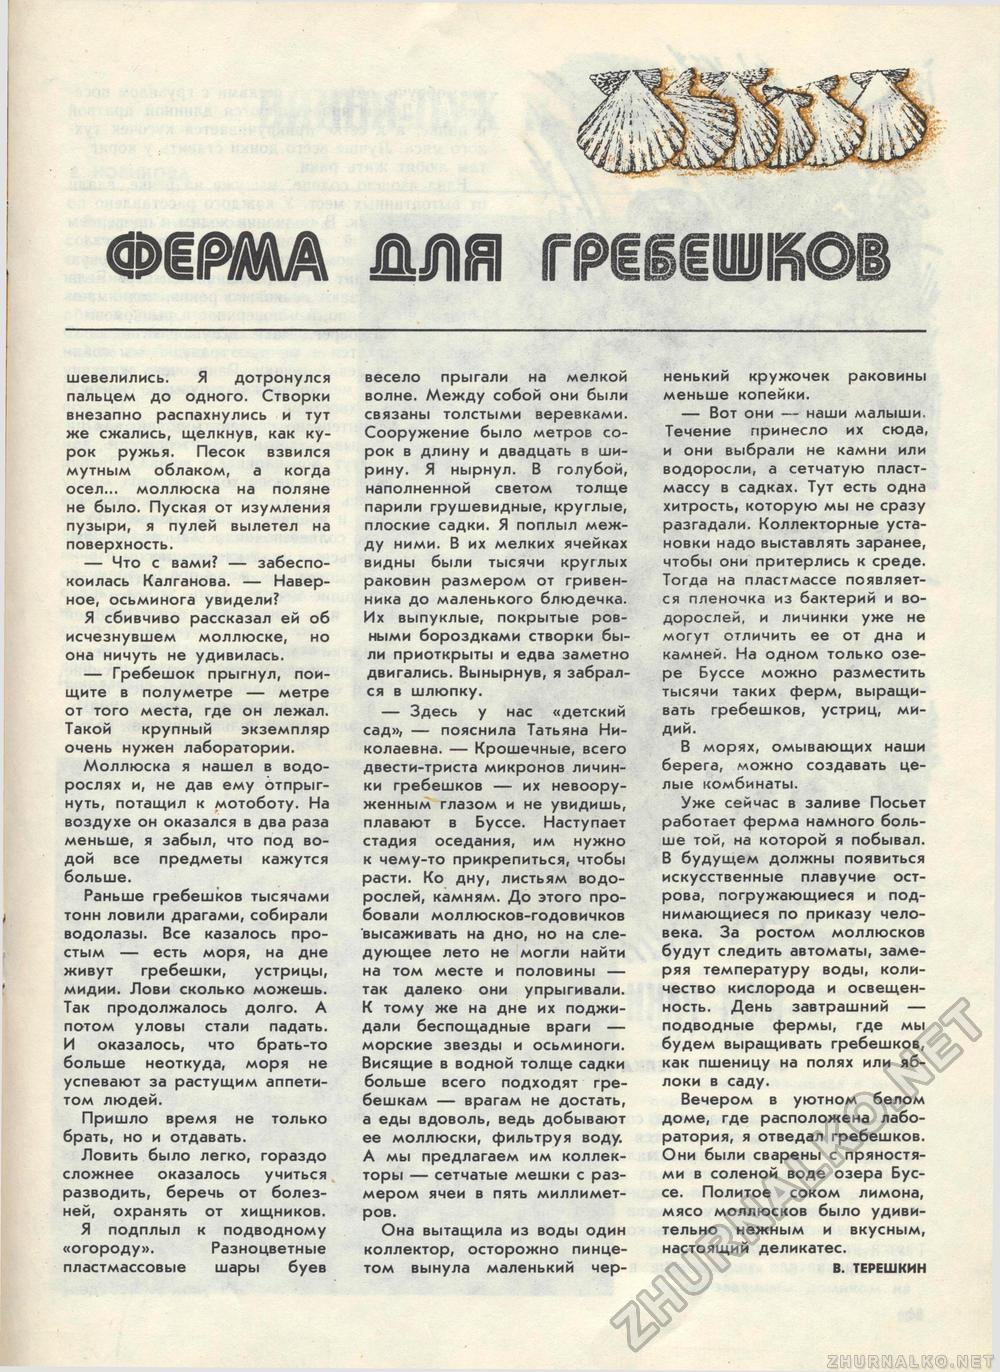  1983-08,  28